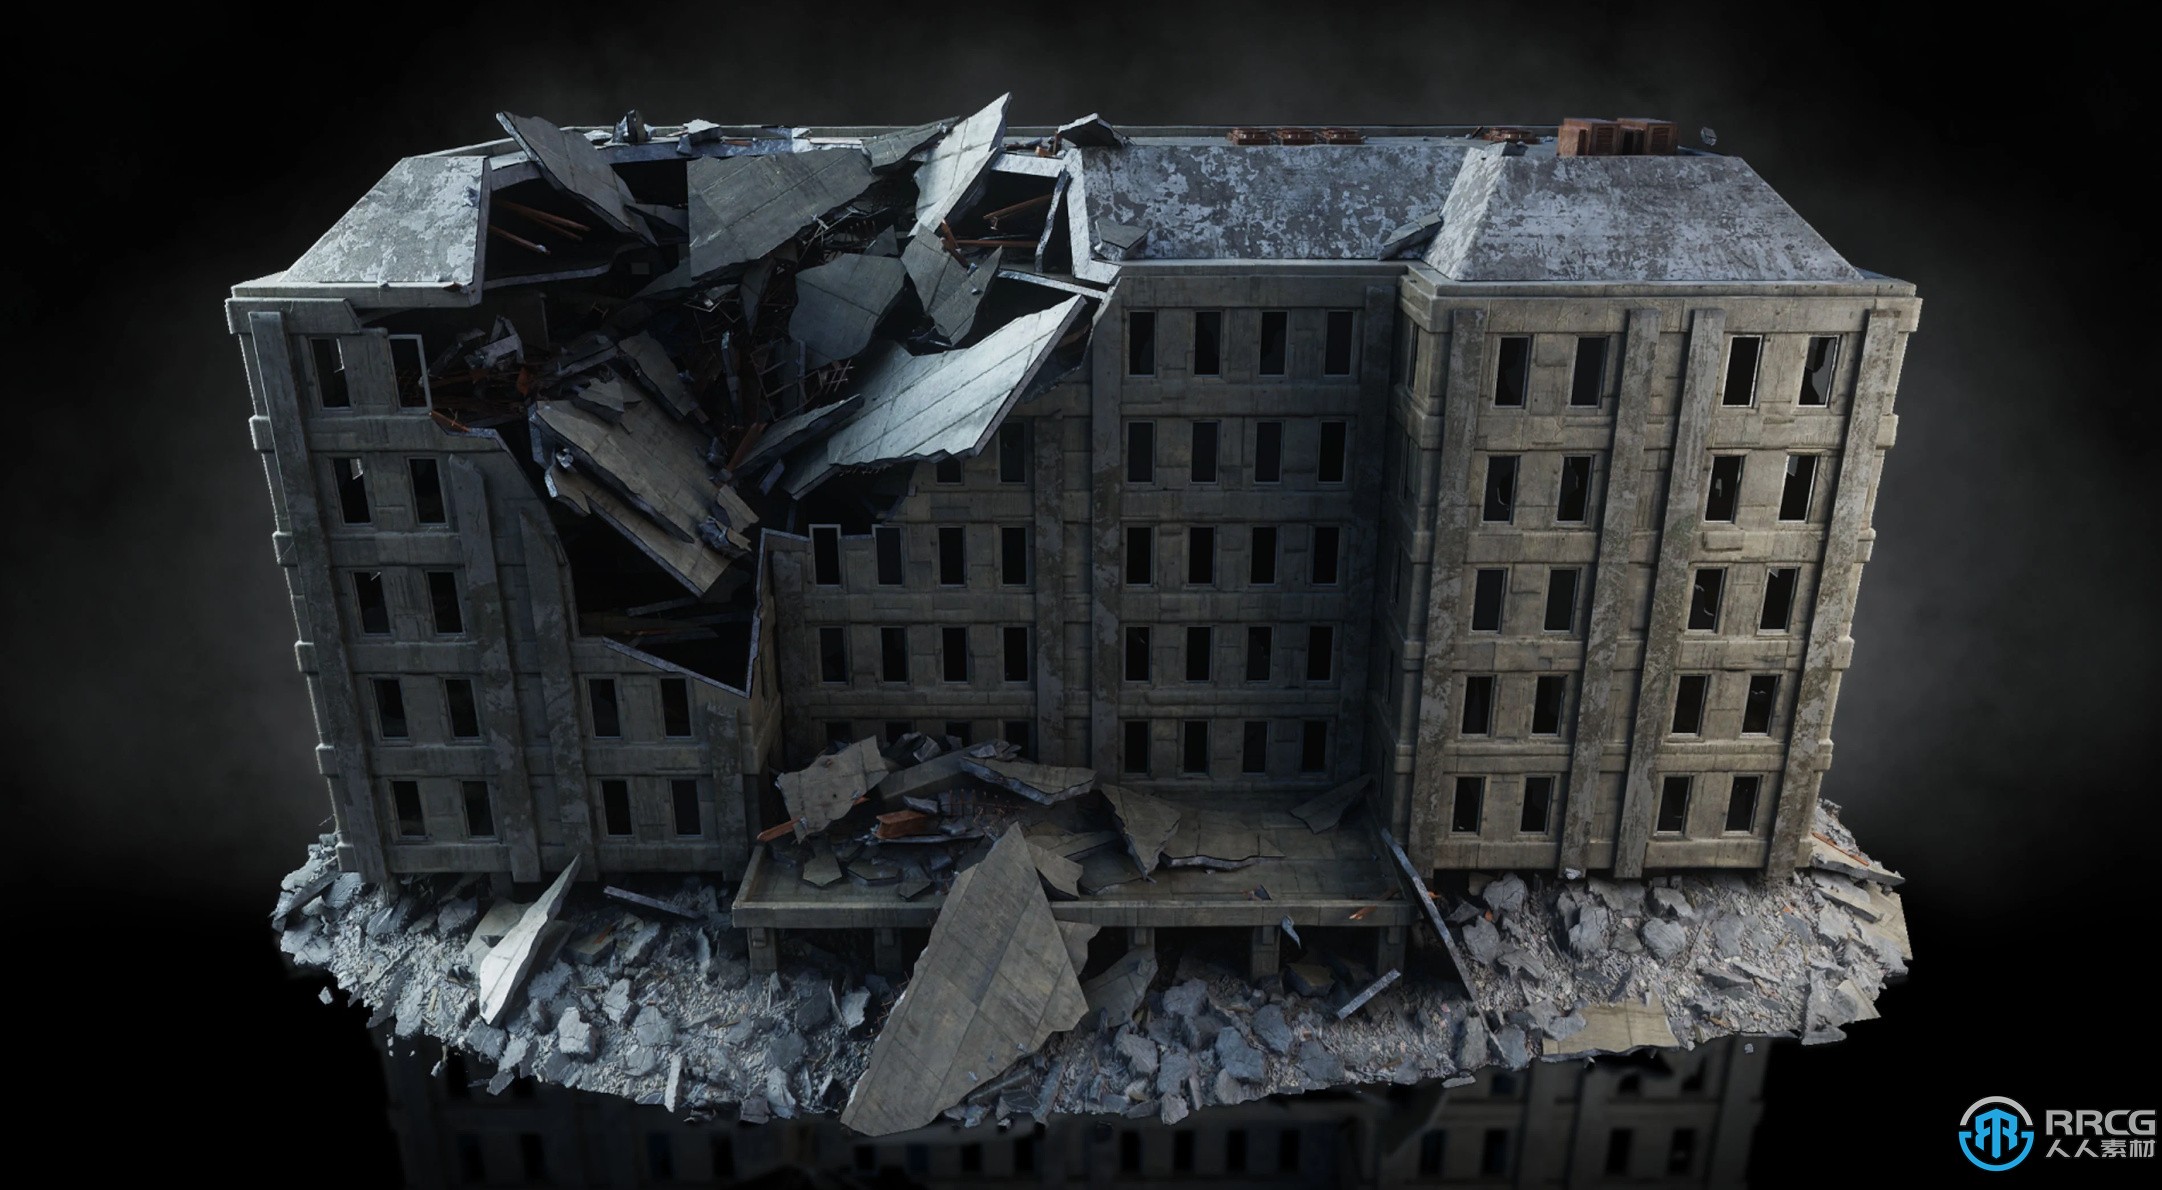 末日战争城市废墟残骸建筑景观3D模型合集